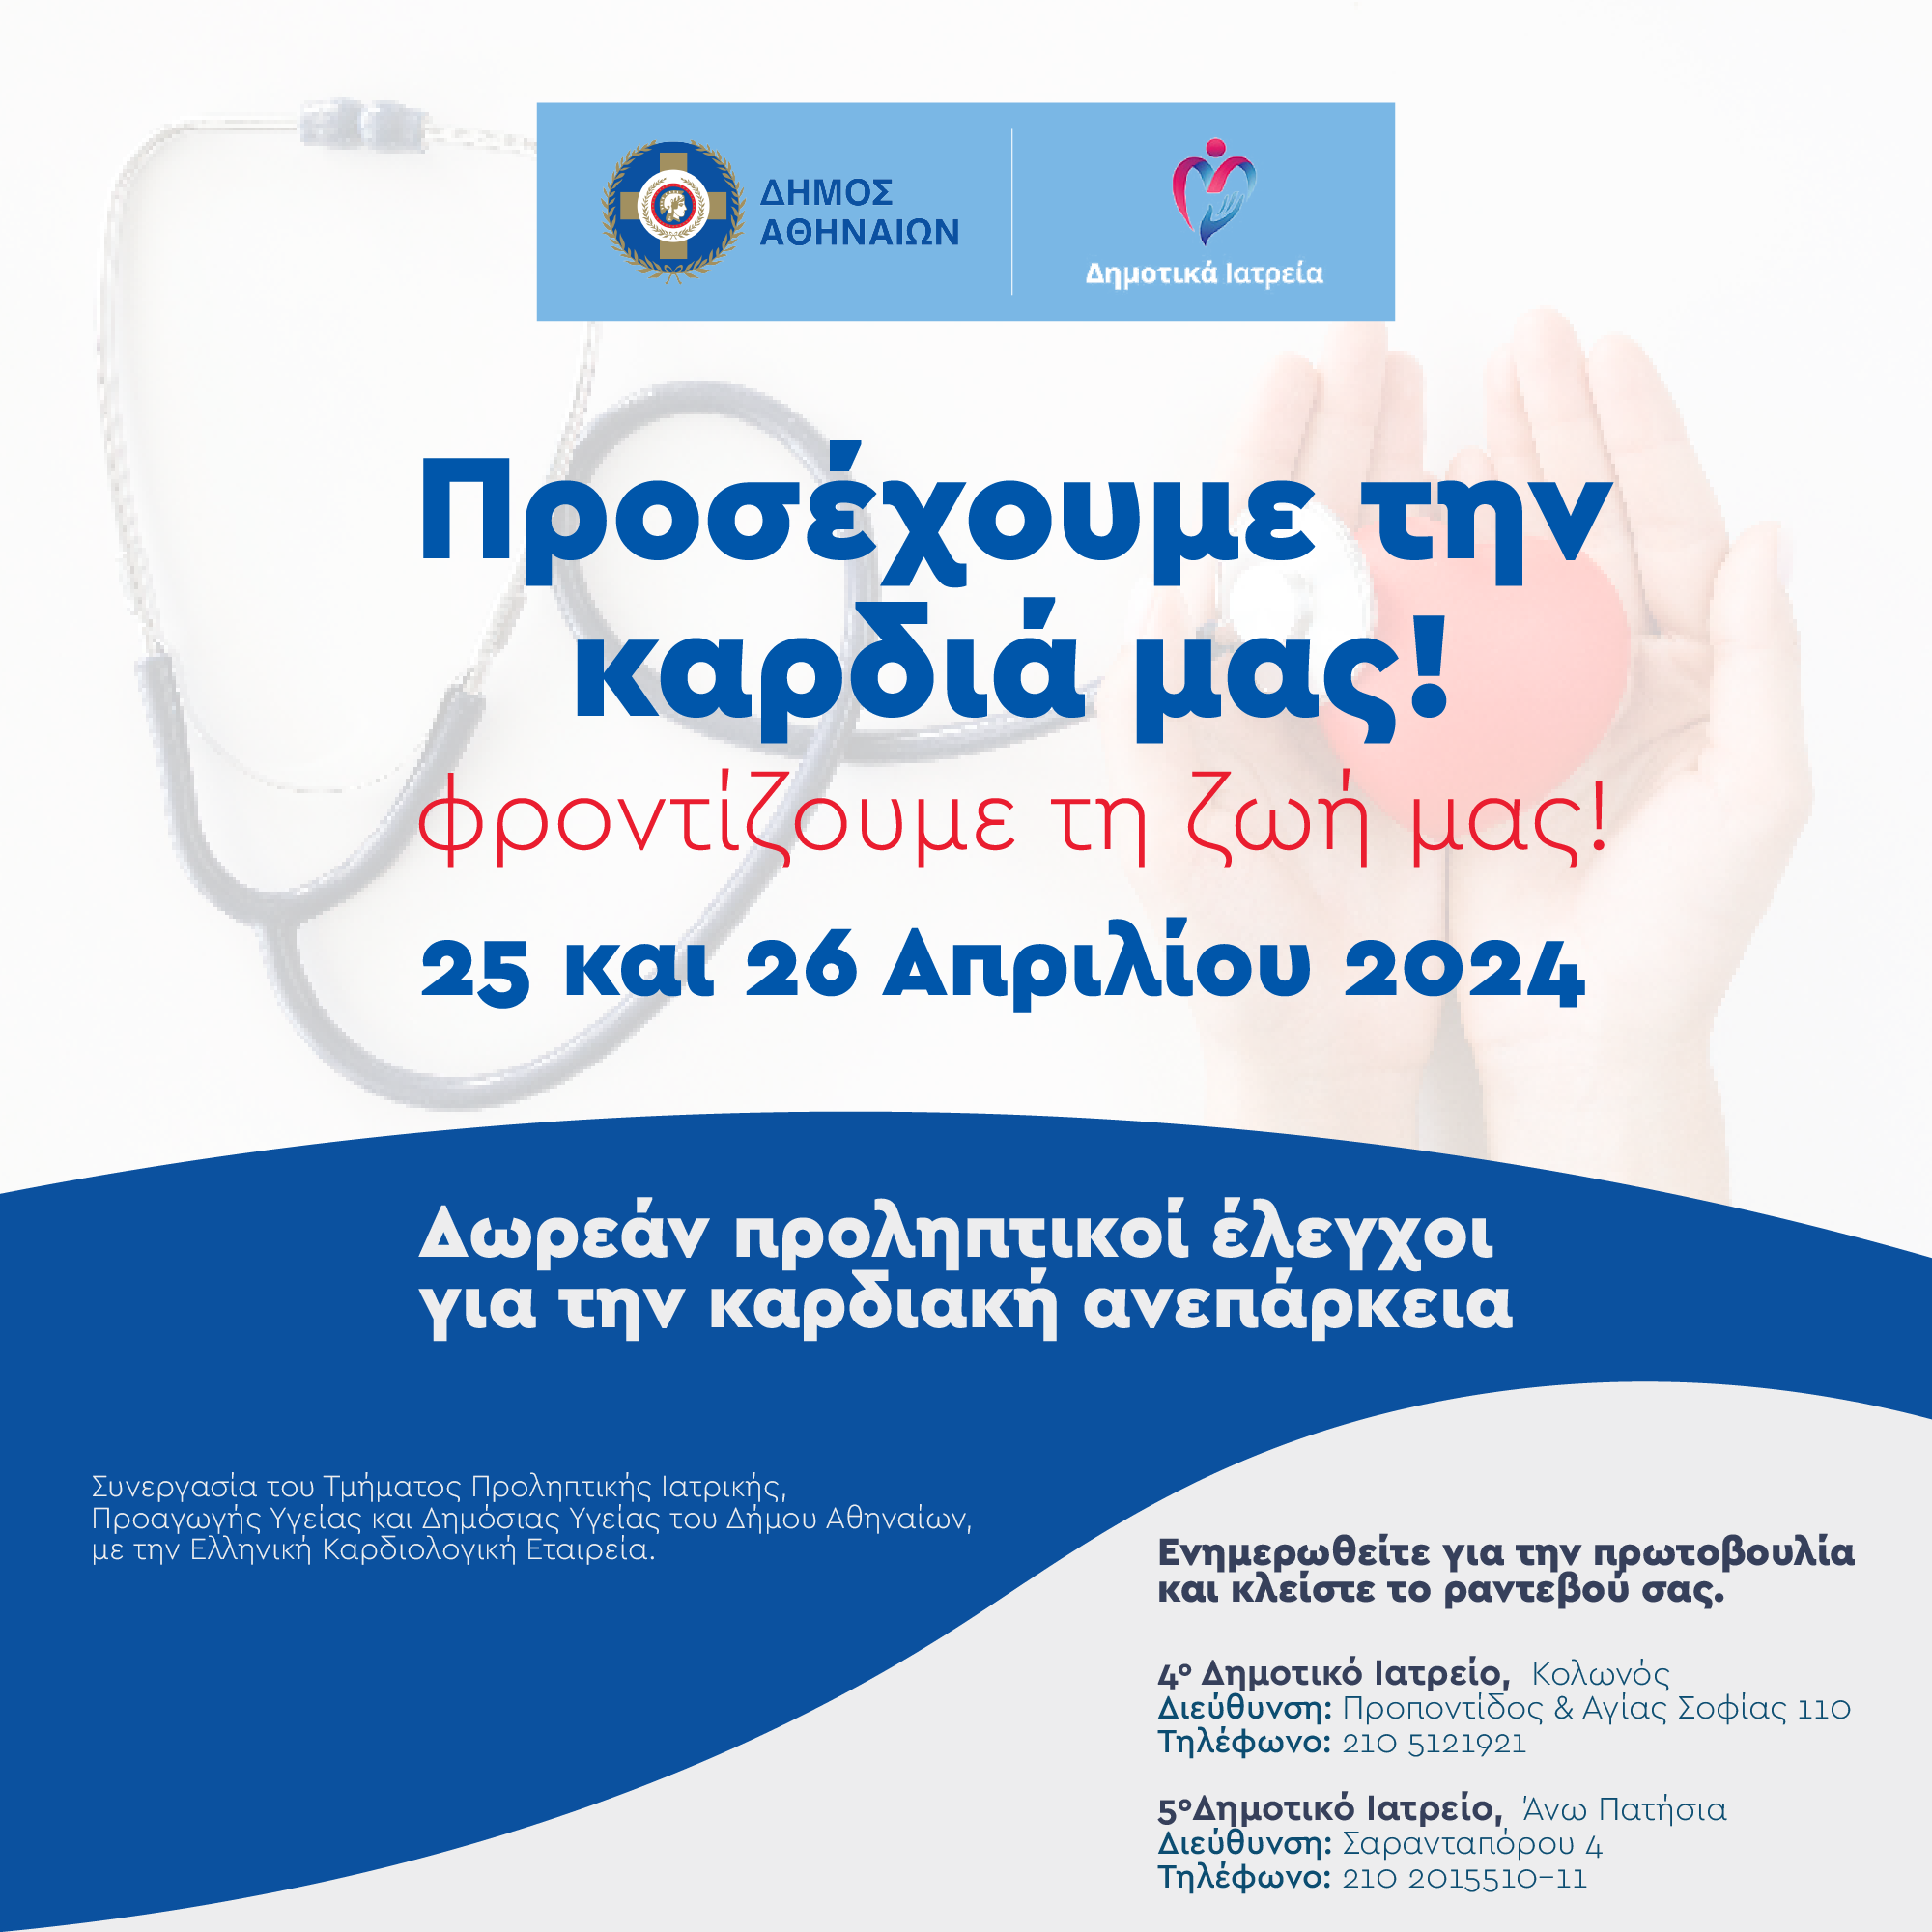 Έλεγχος και ενημέρωση για την Καρδιακή Ανεπάρκεια στα δημοτικά Ιατρεία του Δήμου Αθηναίων